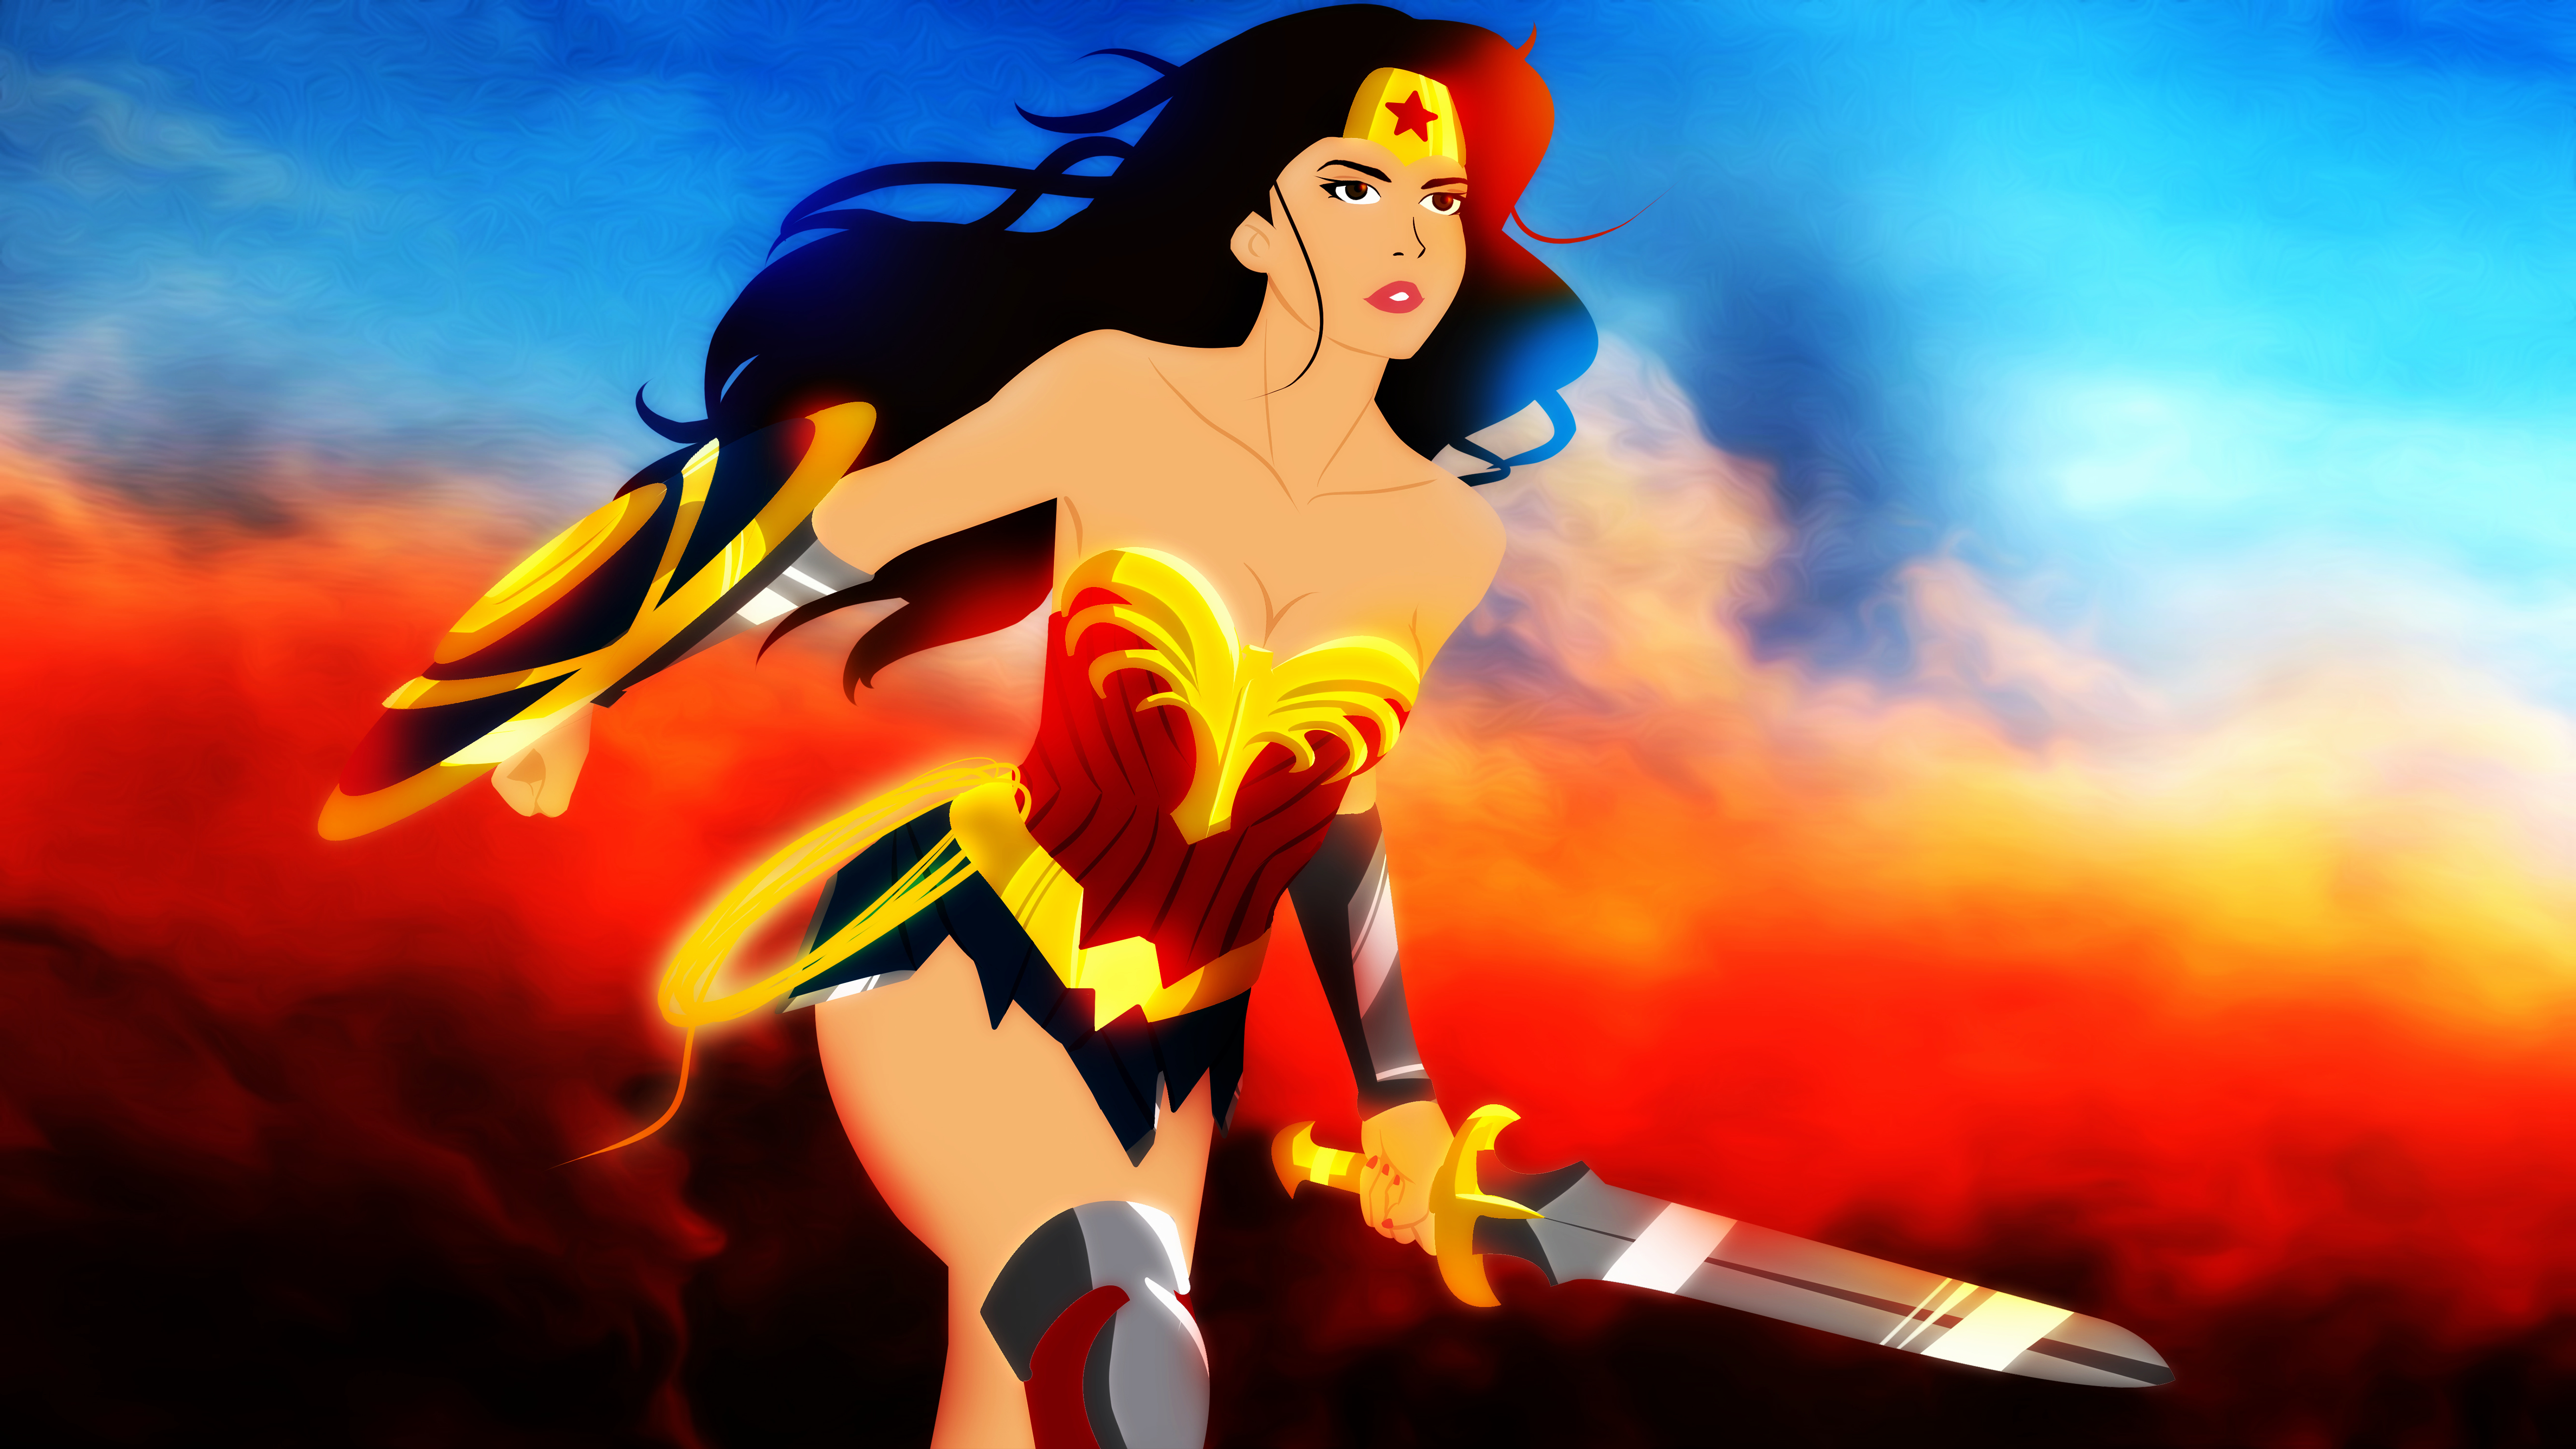 Wonder Woman 2017 Movie Animated style by bat123spider on DeviantArt